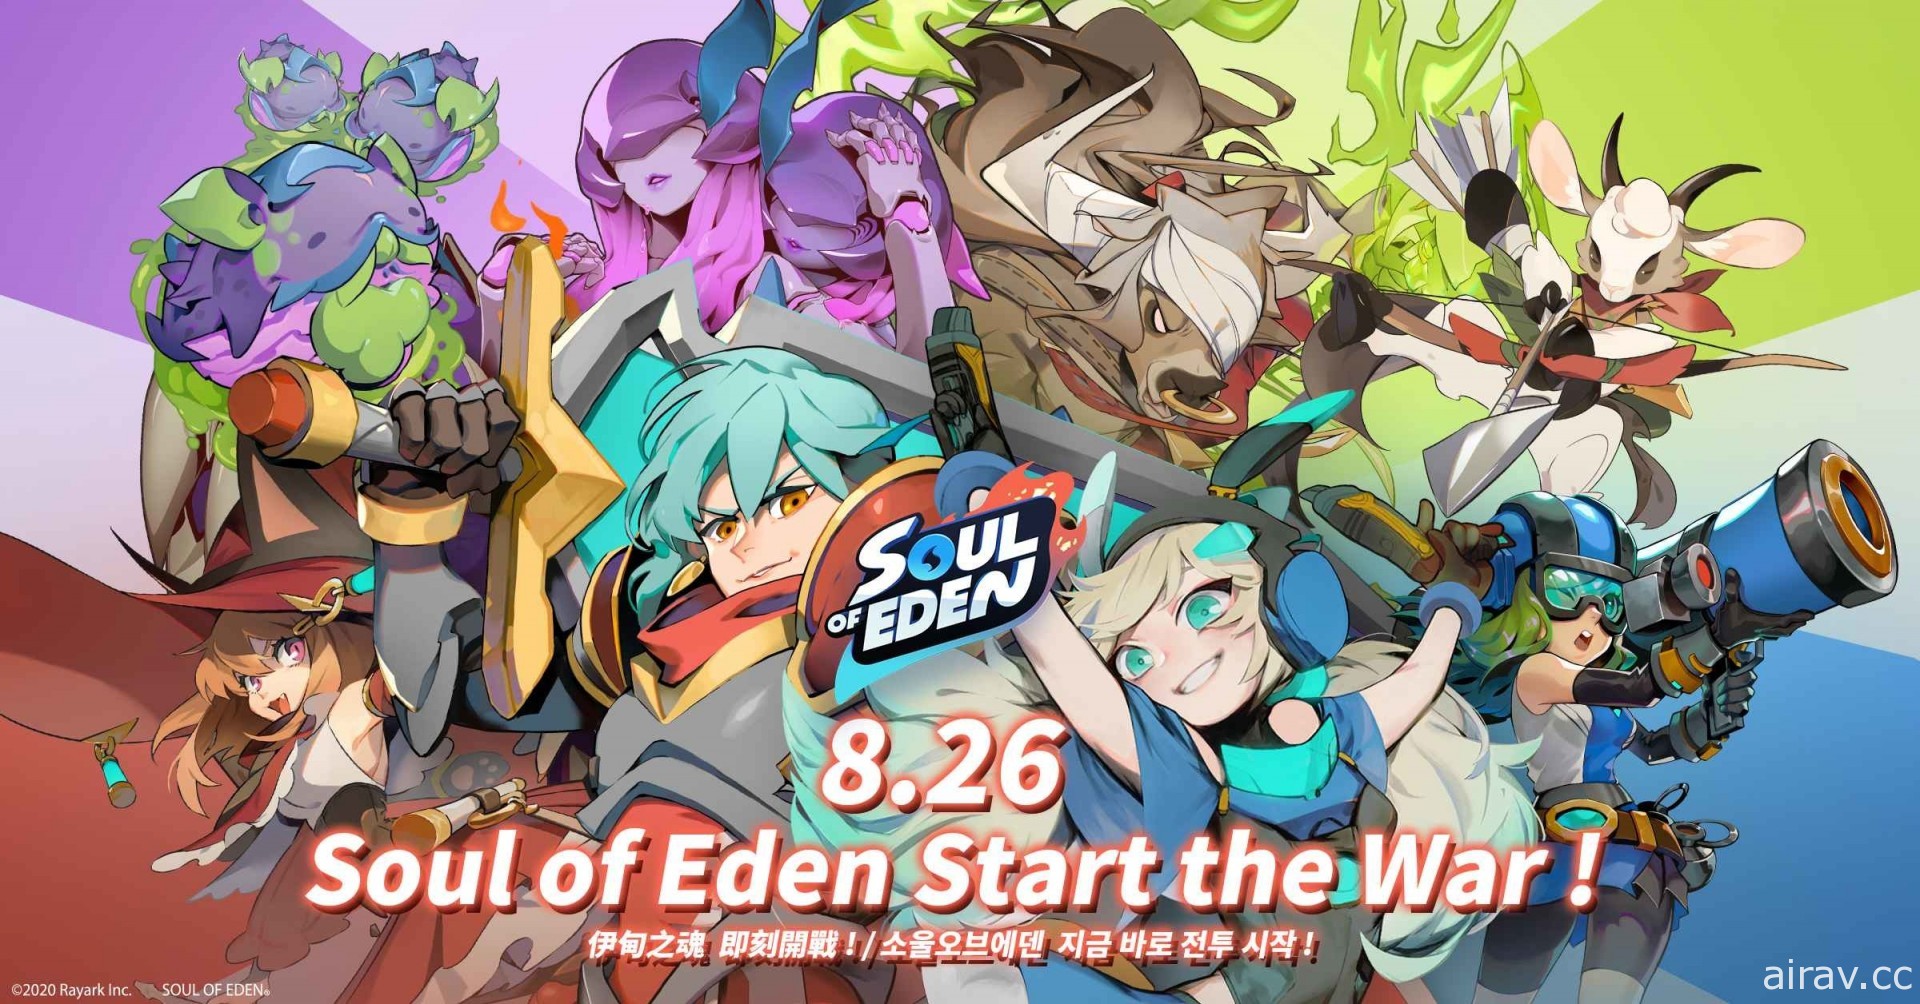 《Soul of Eden 伊甸之魂》将于 8 月 26 日上市 揭开四大阵营特色与美术风格